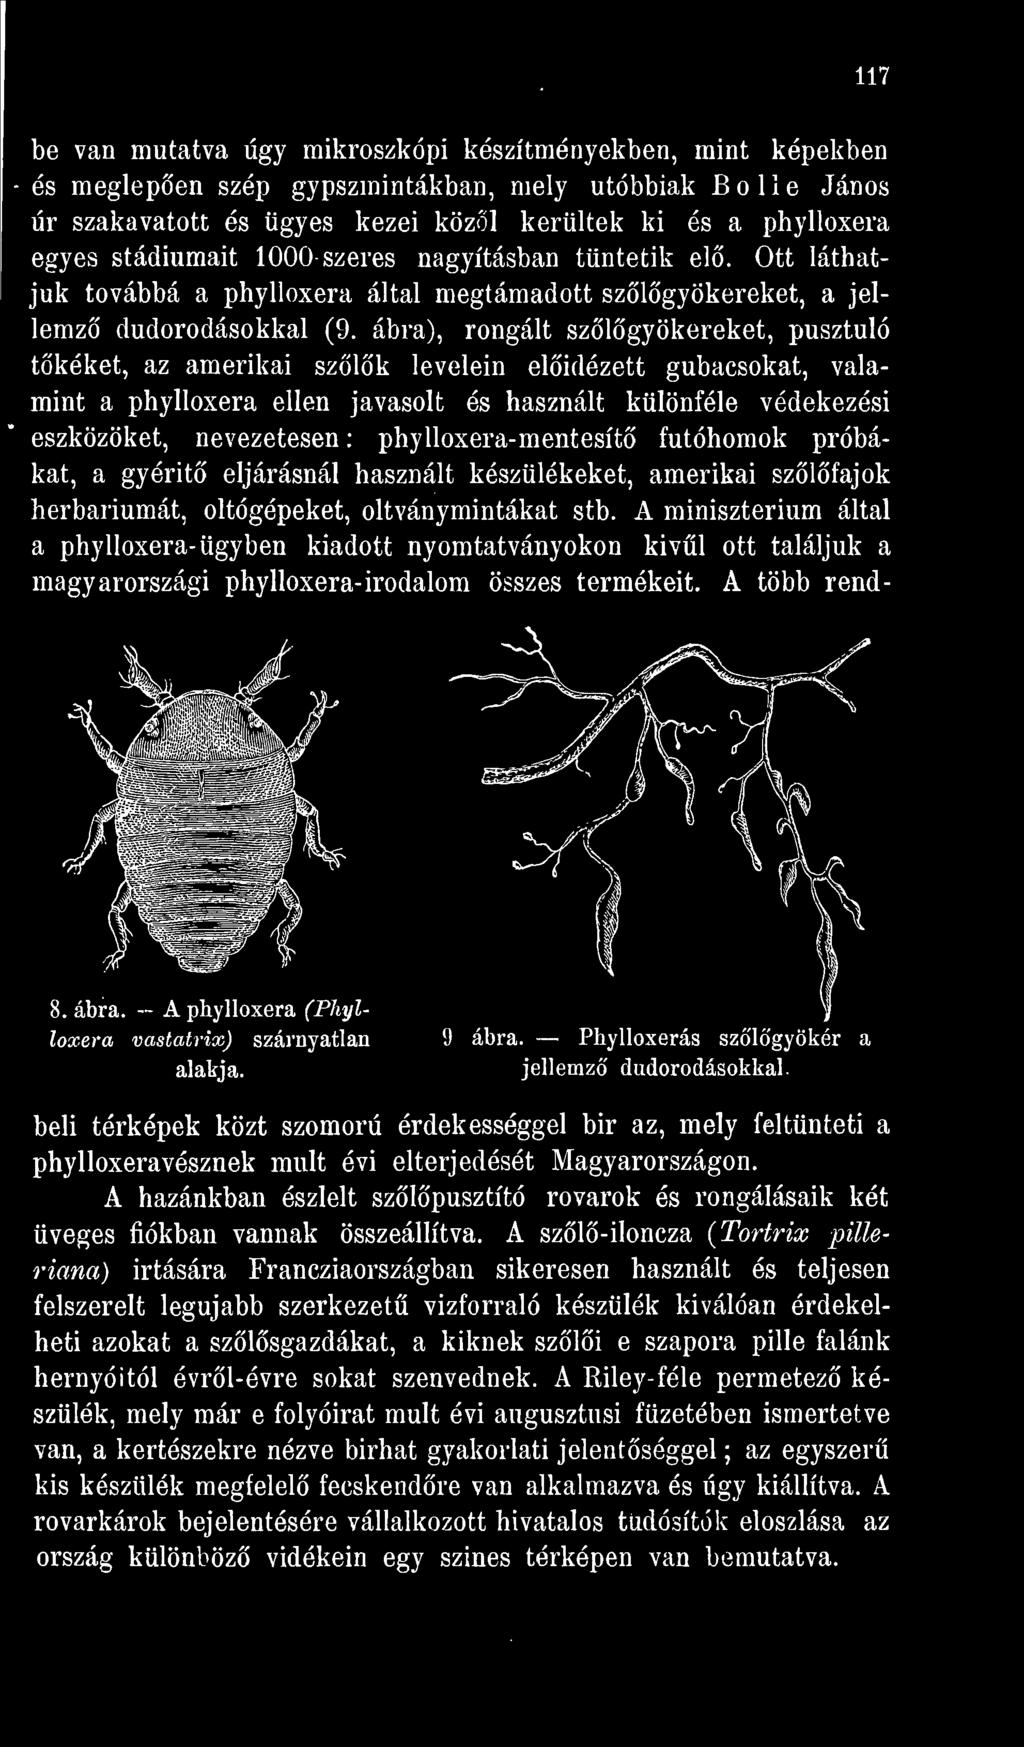 A minisztérium által a phylloxera- ügyben kiadott nyomtatványokon kivl ott találjuk a magyarországi phylloxera- irodalom összes termékeit. A több rend-,1 A 8. ábra.